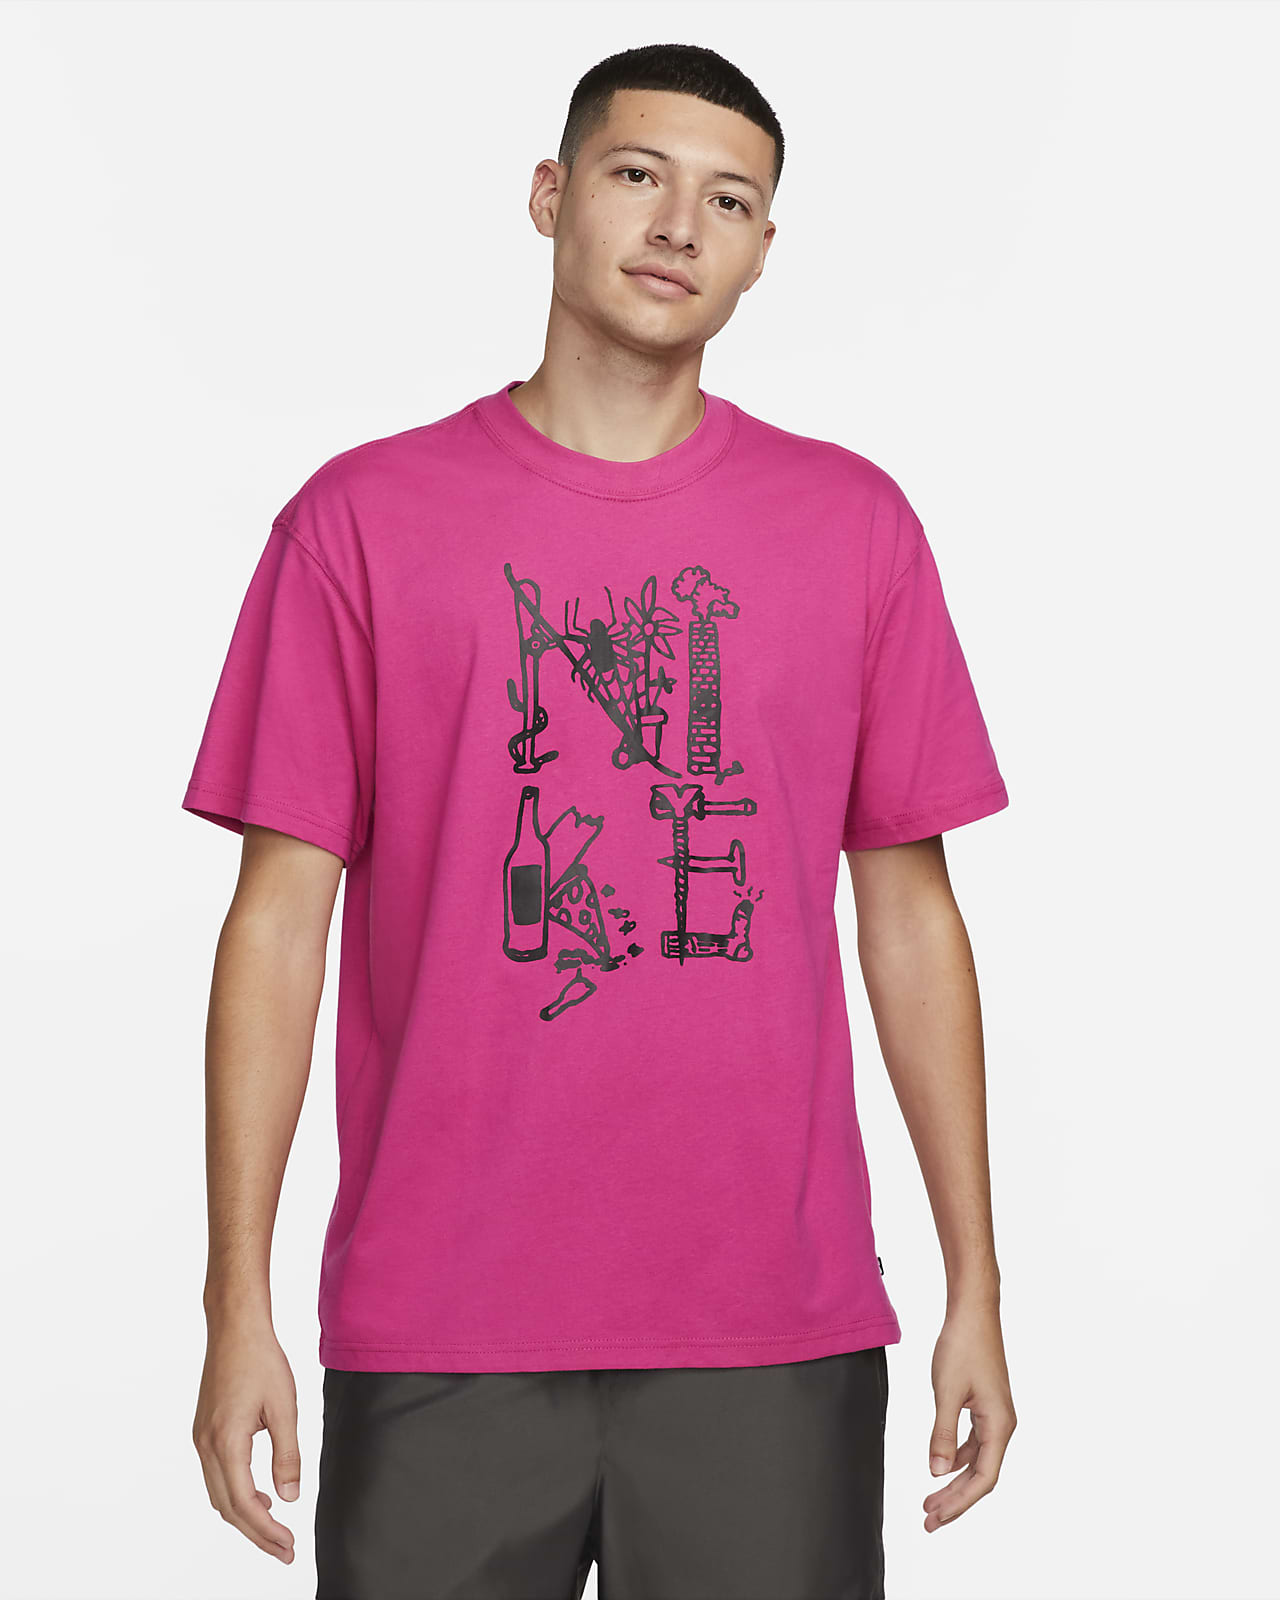 despierta Contaminado Tibio Nike SB Camiseta - Hombre. Nike ES